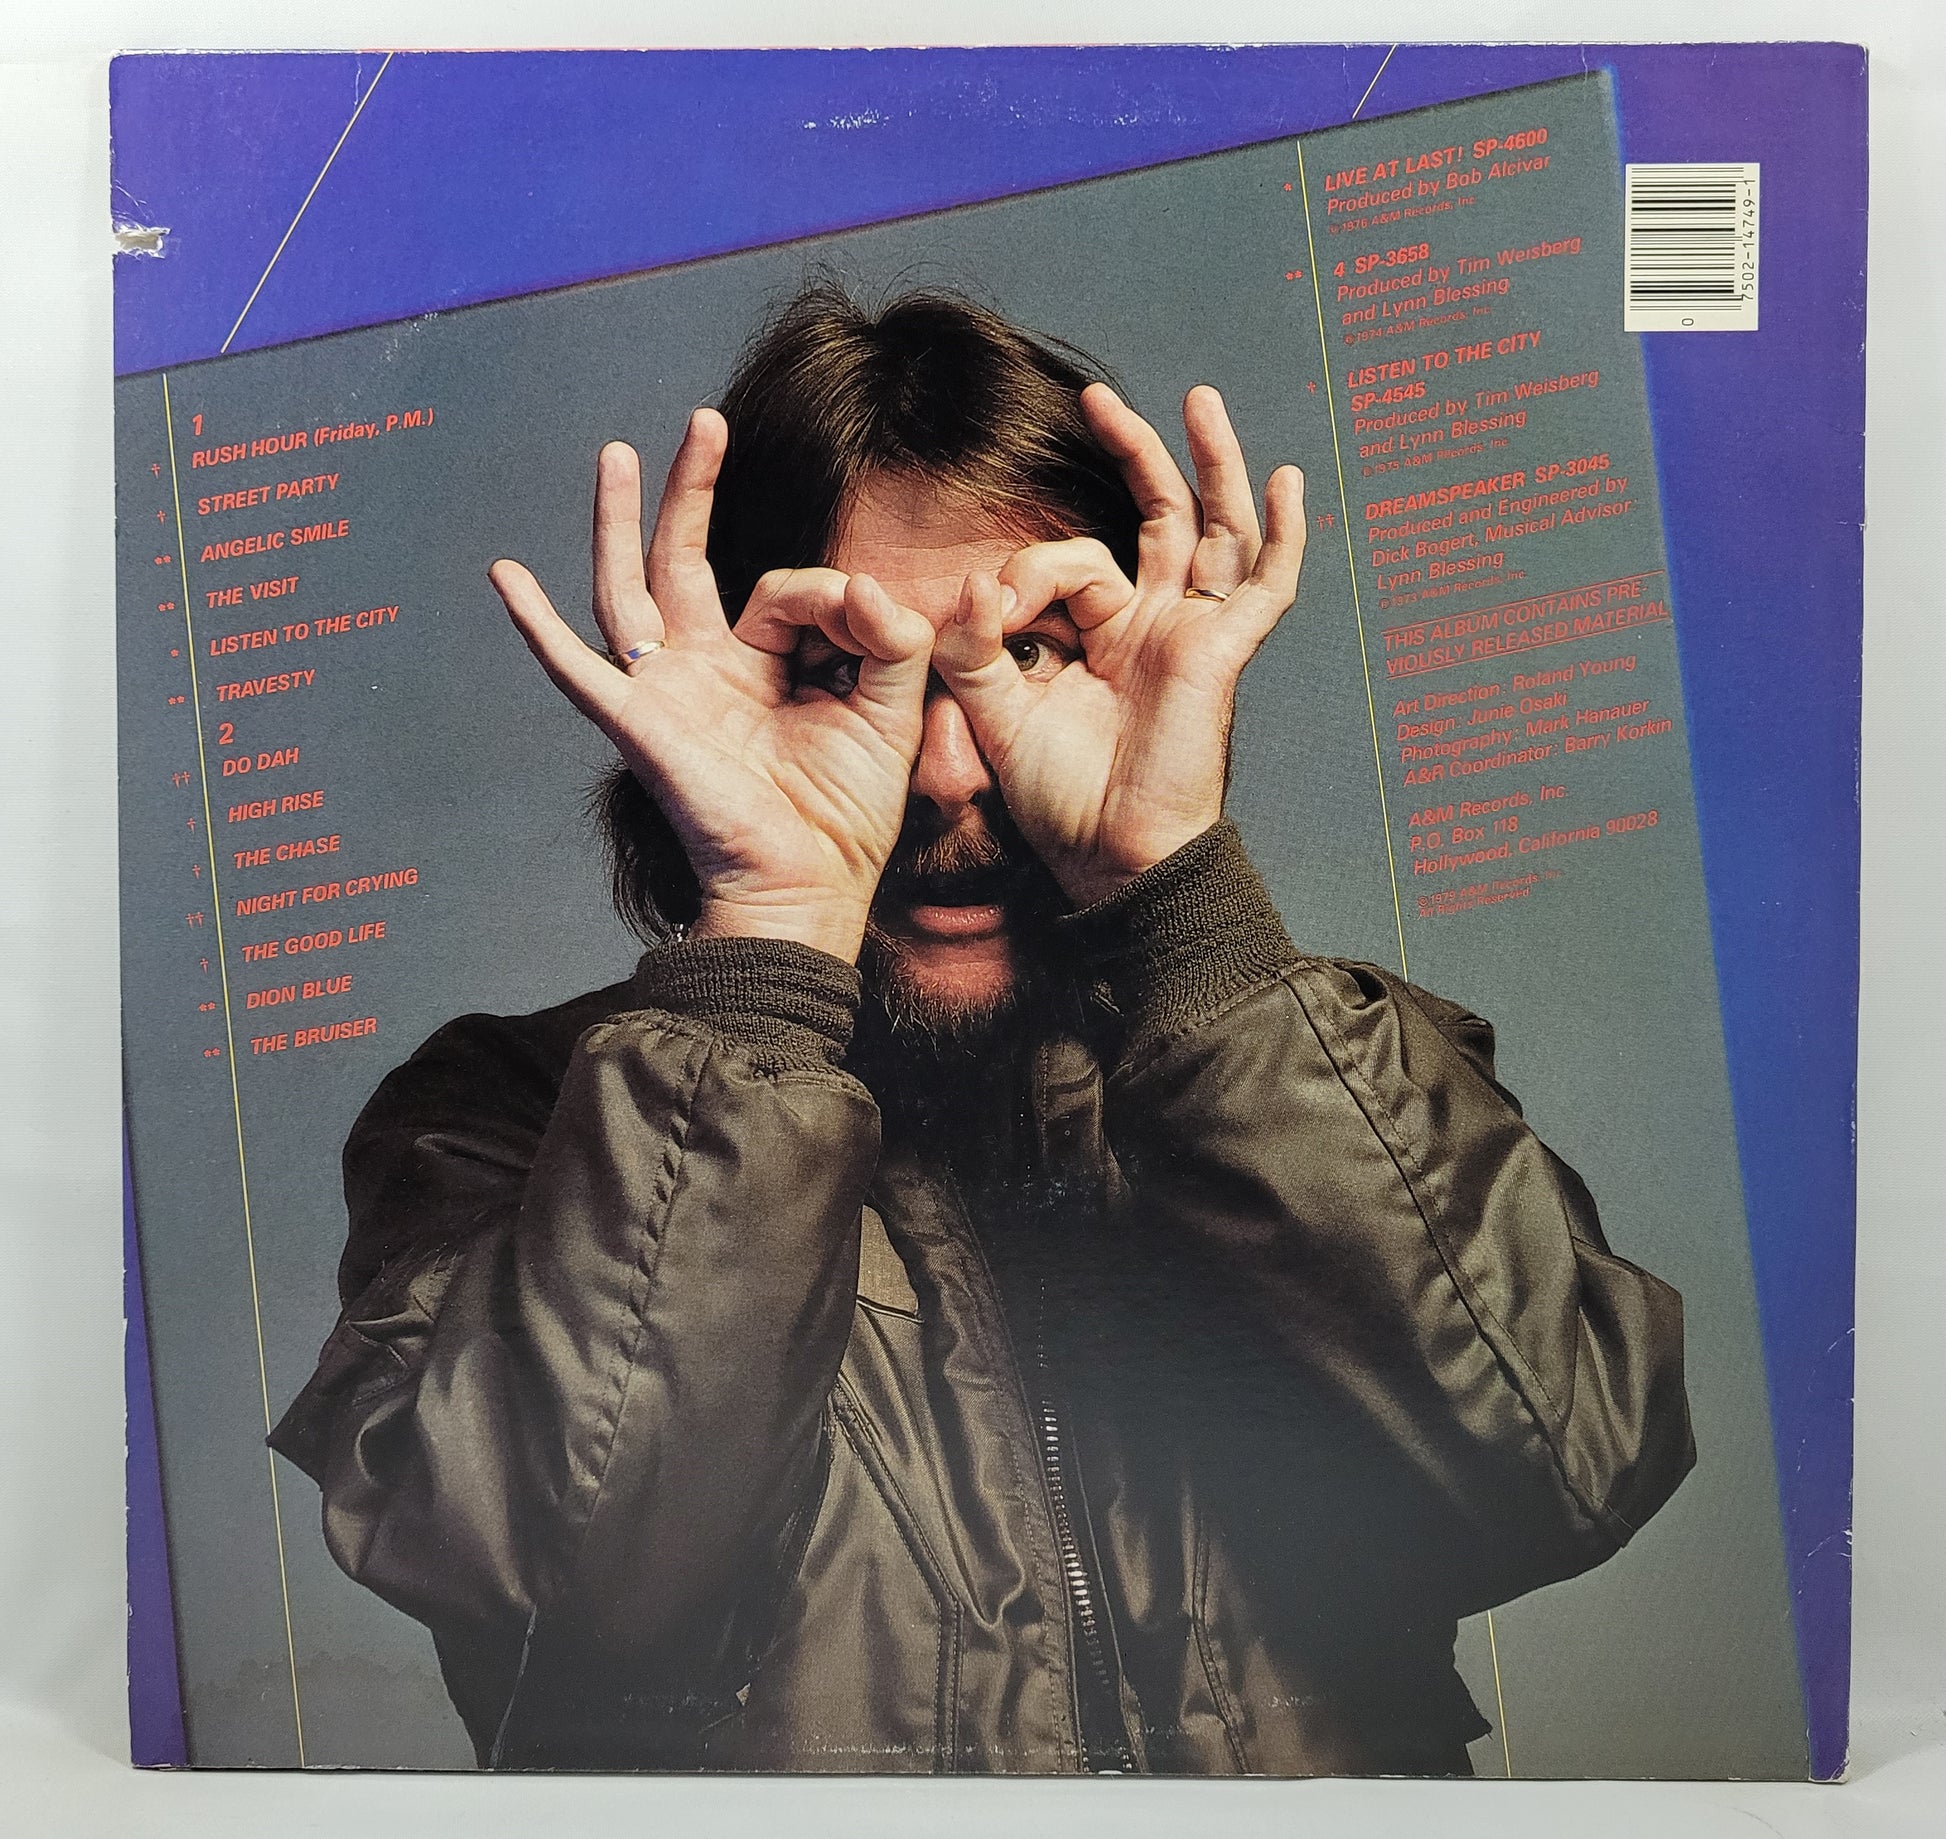 Tim Weisberg - Smile! The Best of Tim Weisberg [1979 Used Vinyl Record LP]